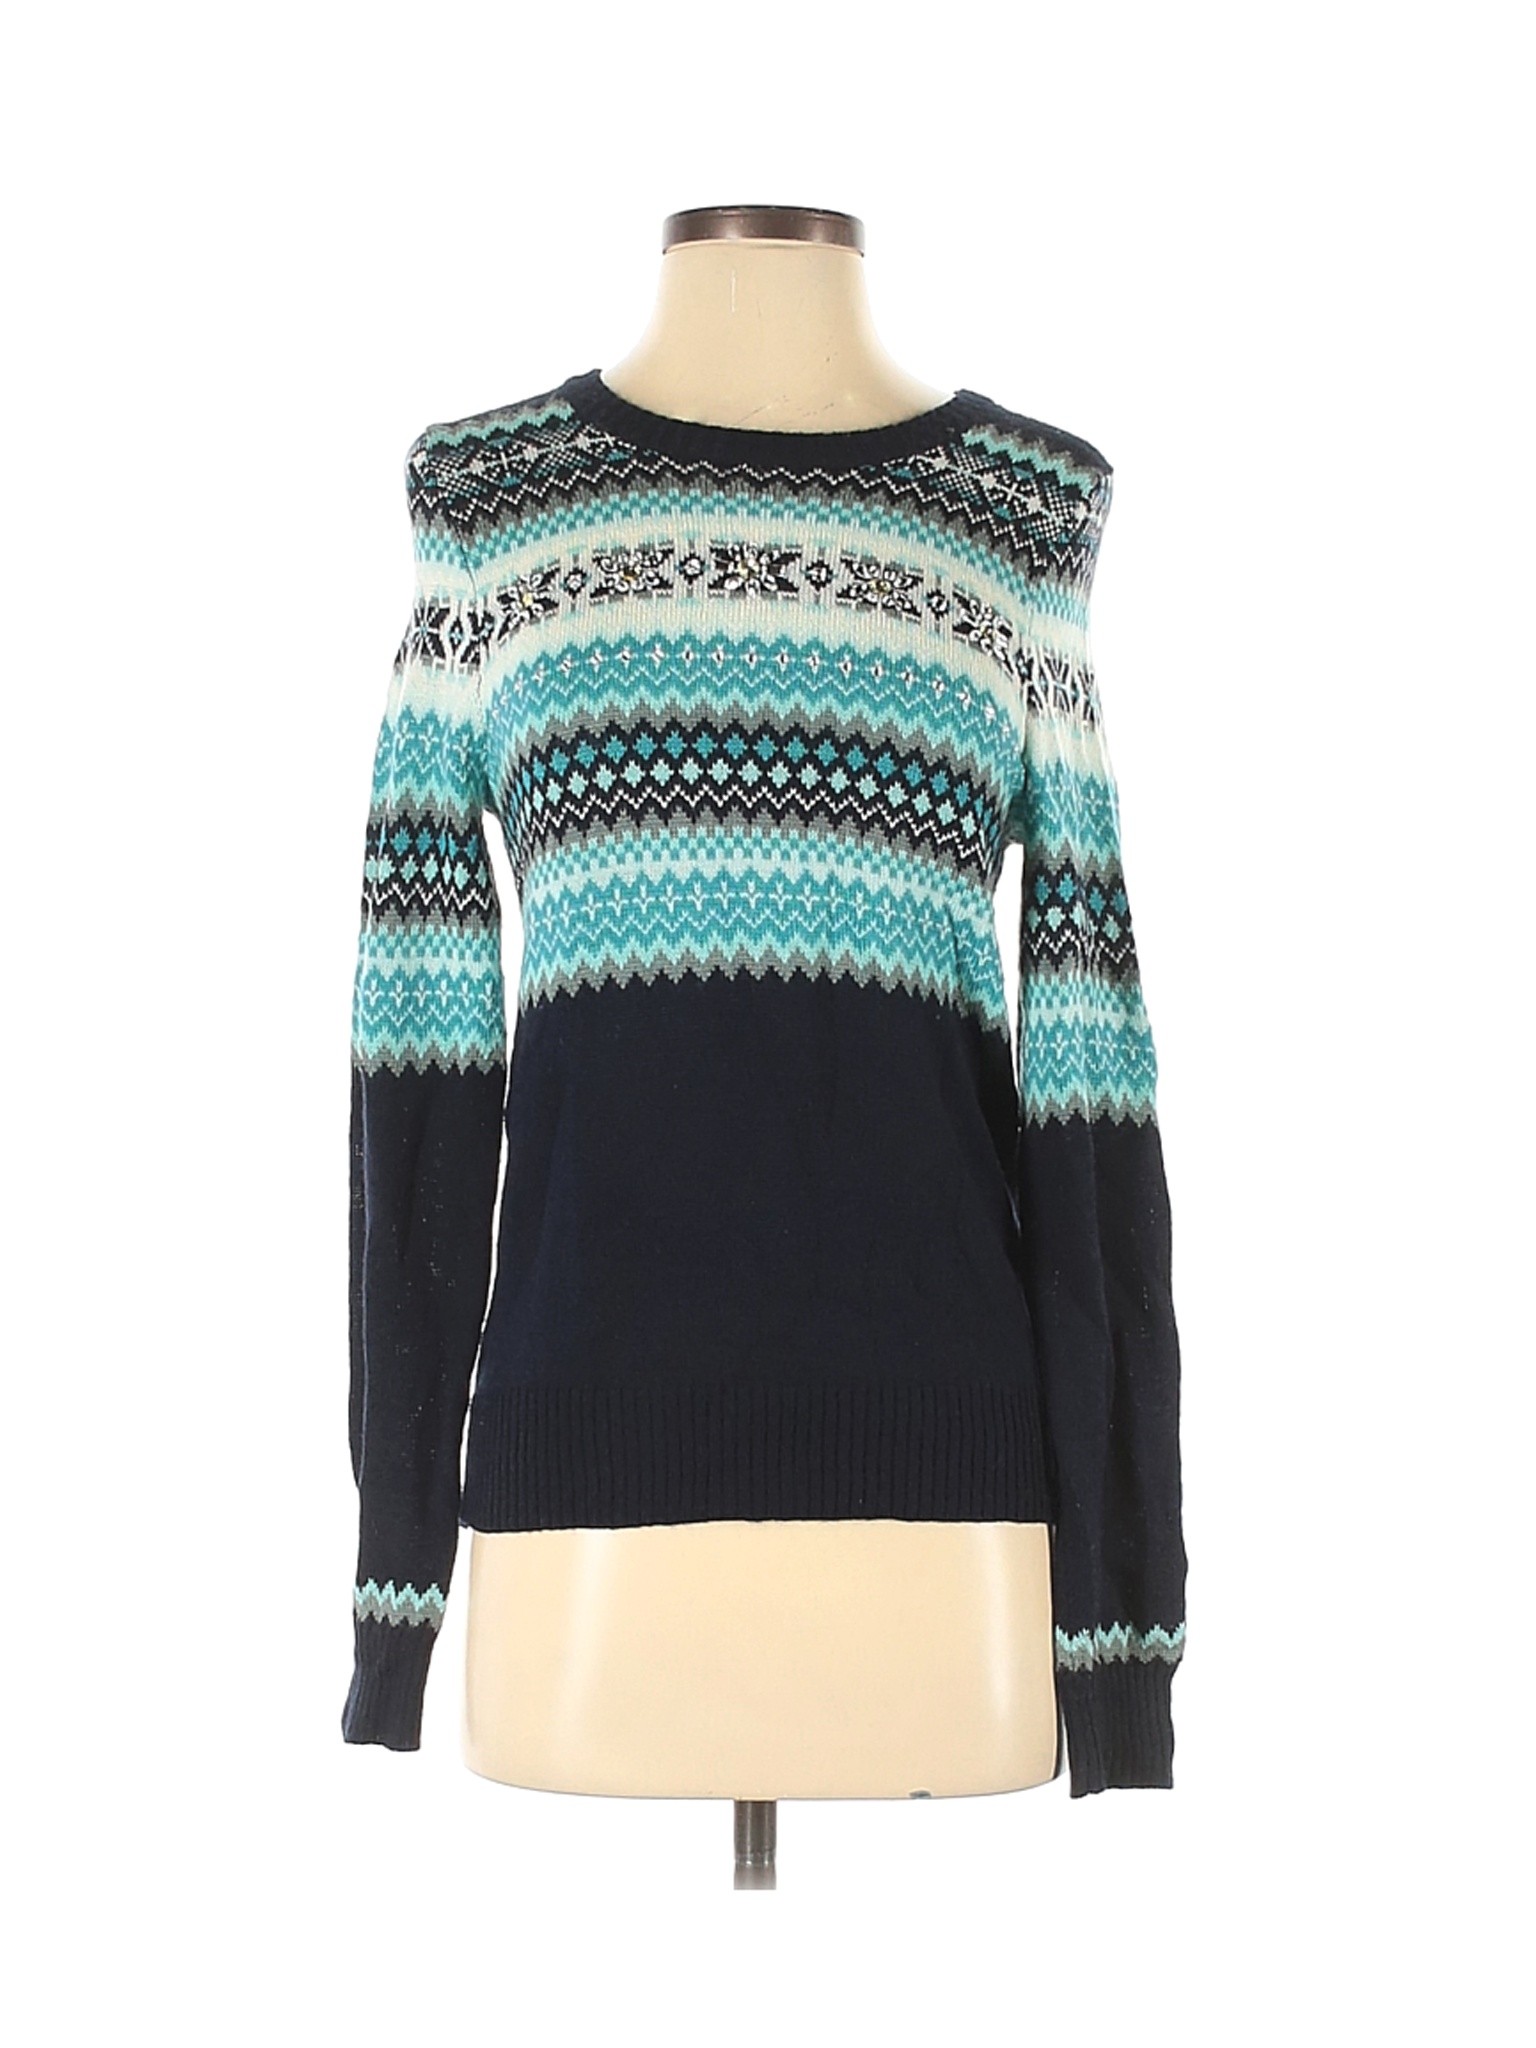 Talbots Women Blue Wool Pullover Sweater S | eBay